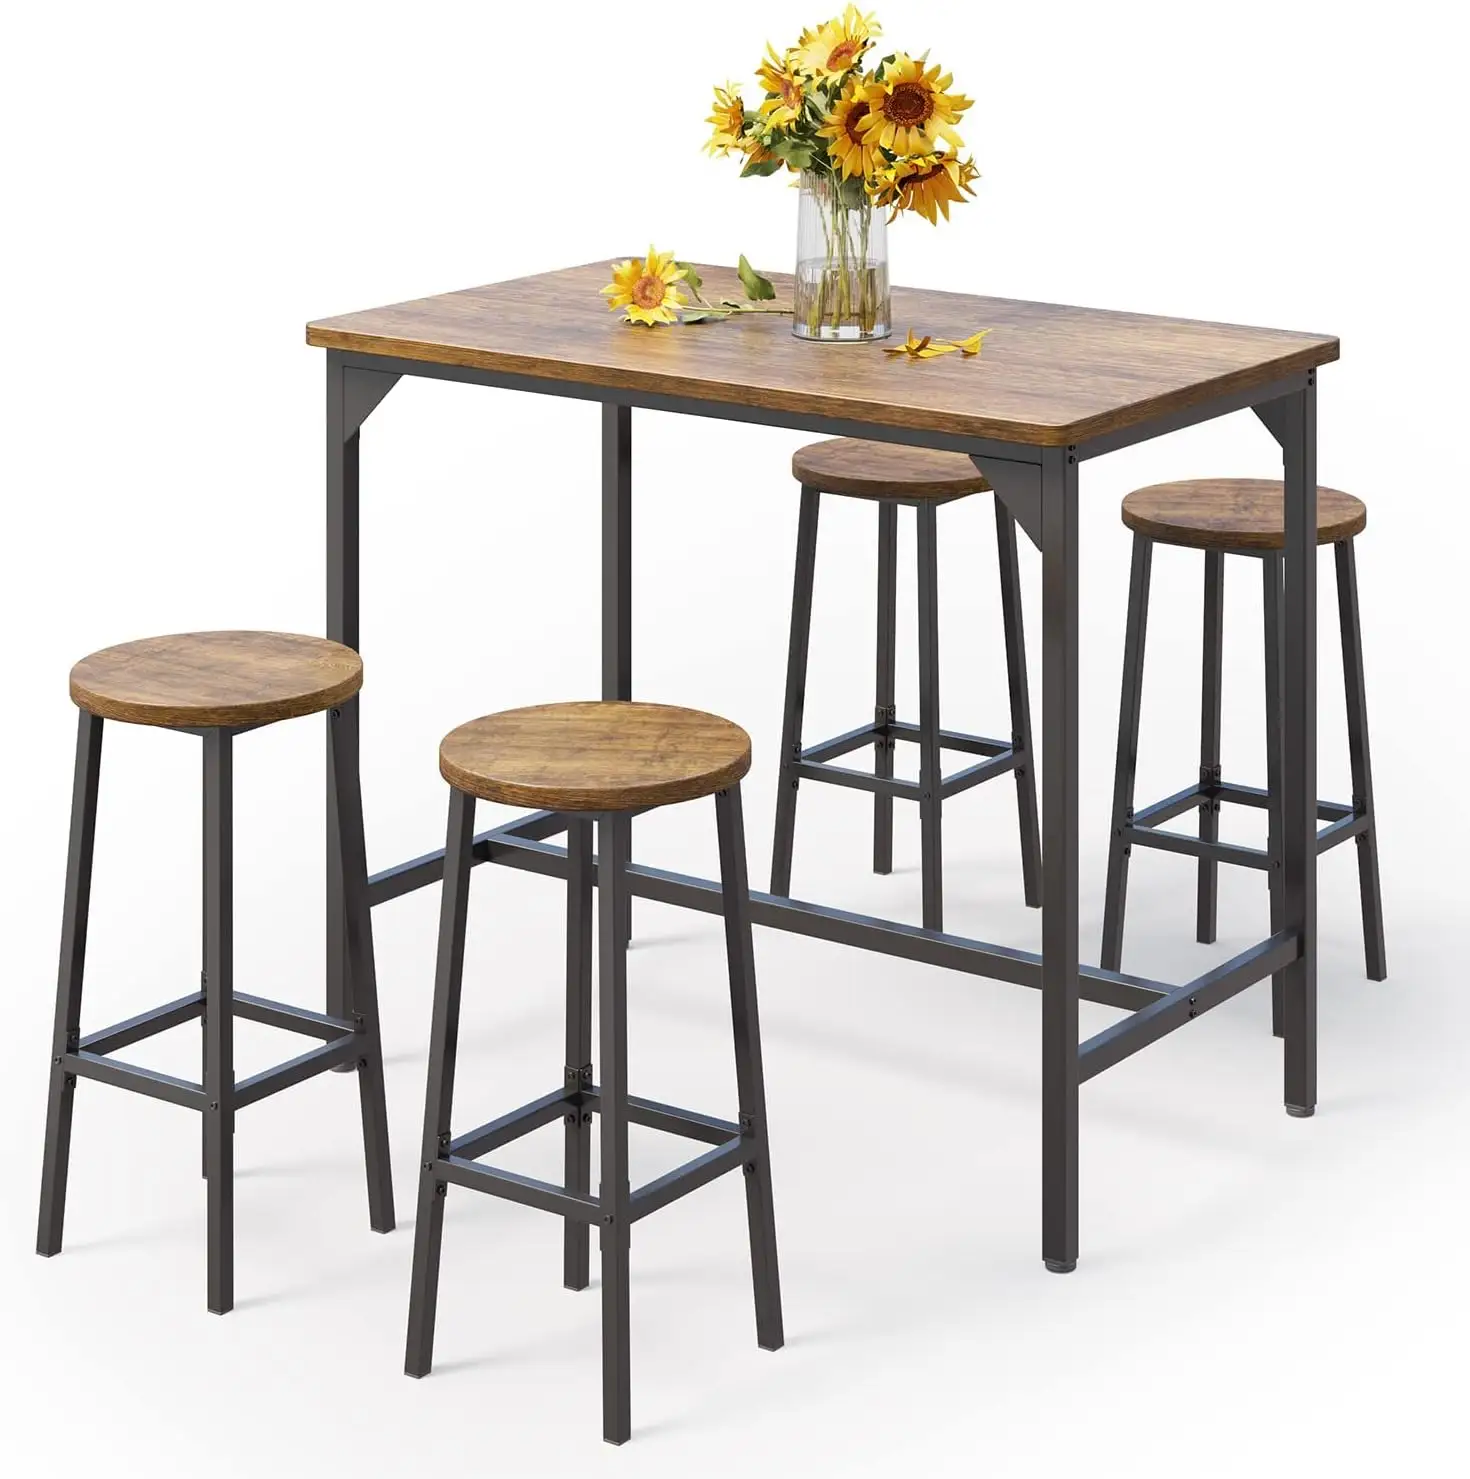 Venta al por mayor de mesa y sillas de bar que ahorran espacio desayuno hogar bar cocina juego de mesa de comedor con 4 sillas